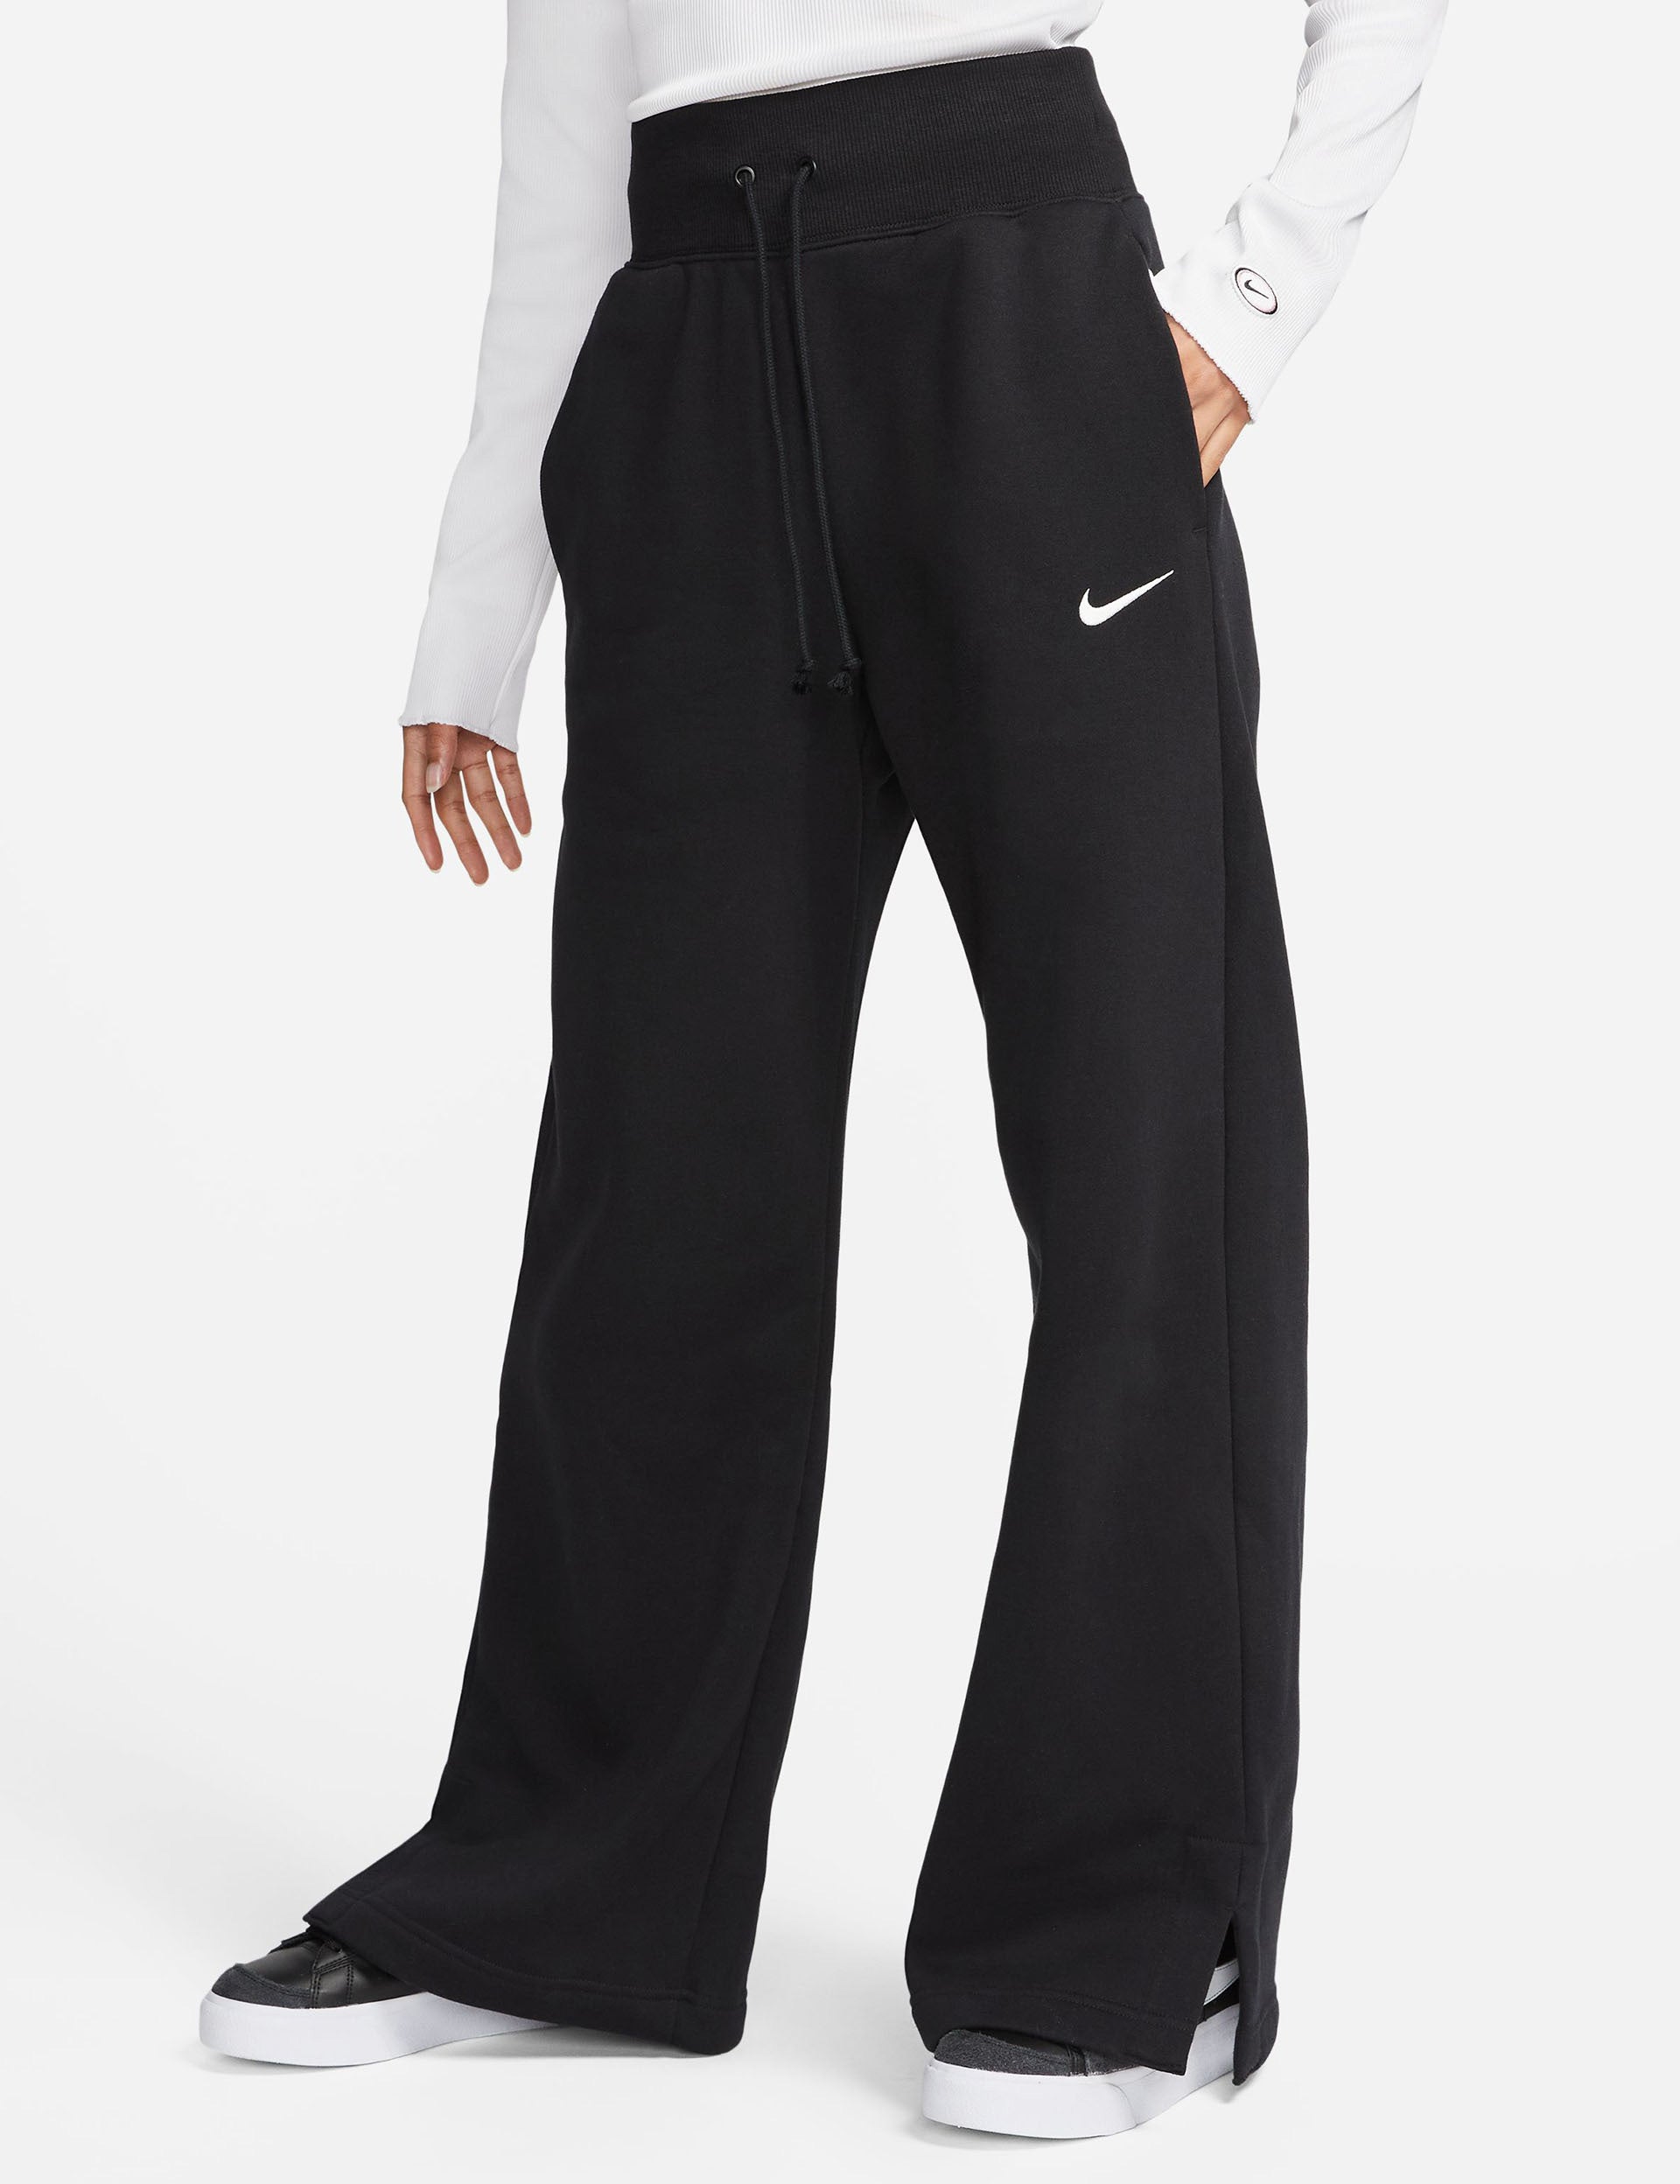 Nike | Sportswear Phoenix Fleece Bottoms - Black | The Sports Edit